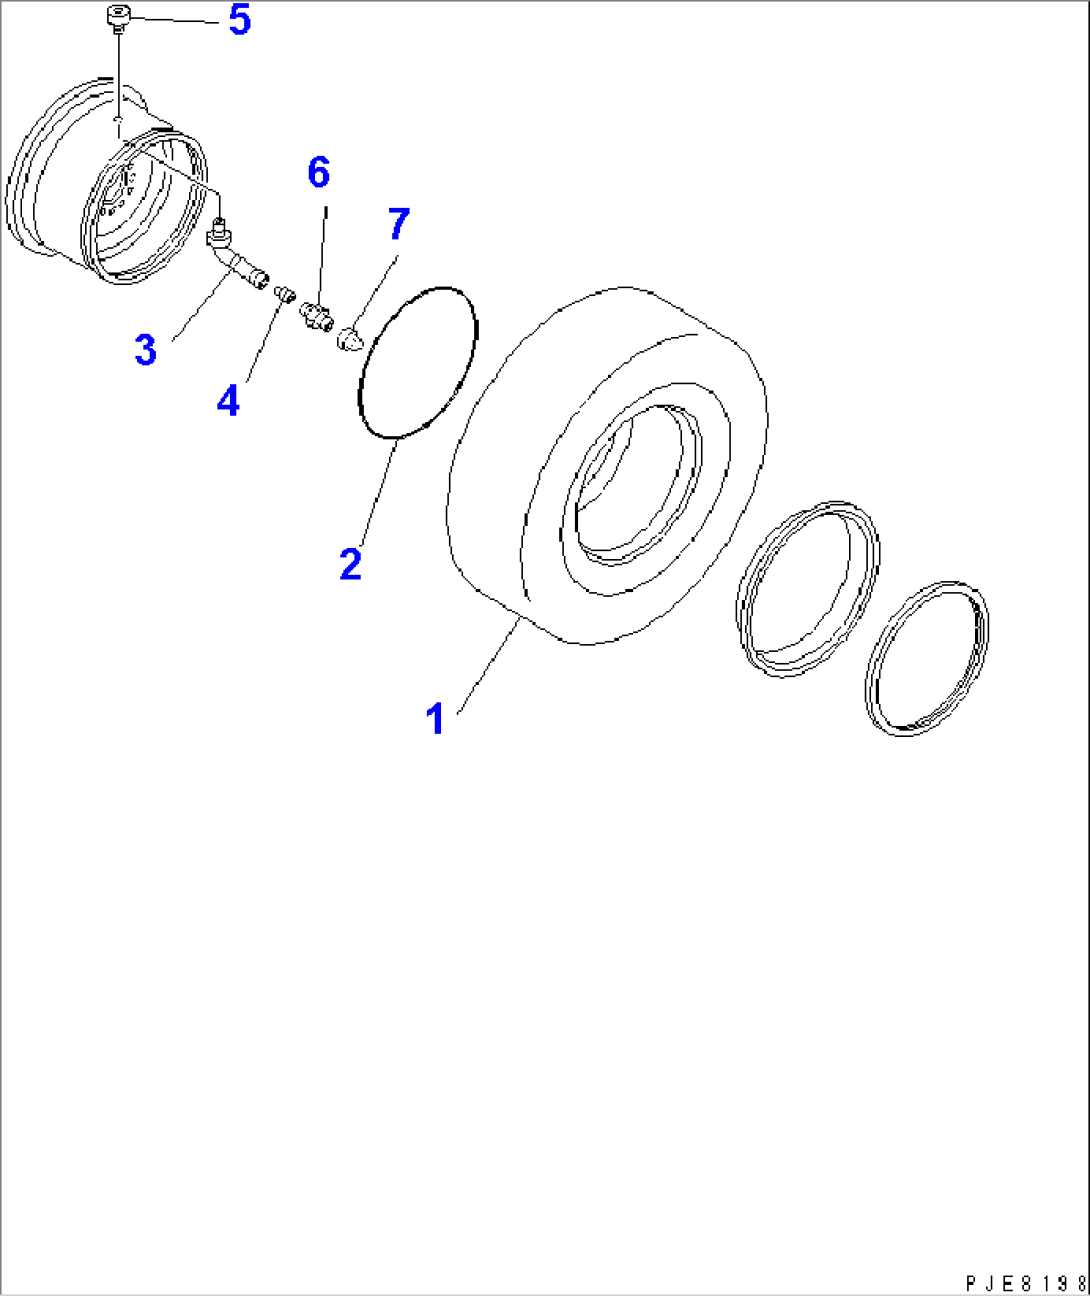 TIRE (17.5-25-12PR-L2 TUBELESS TIRE) (TOYO)